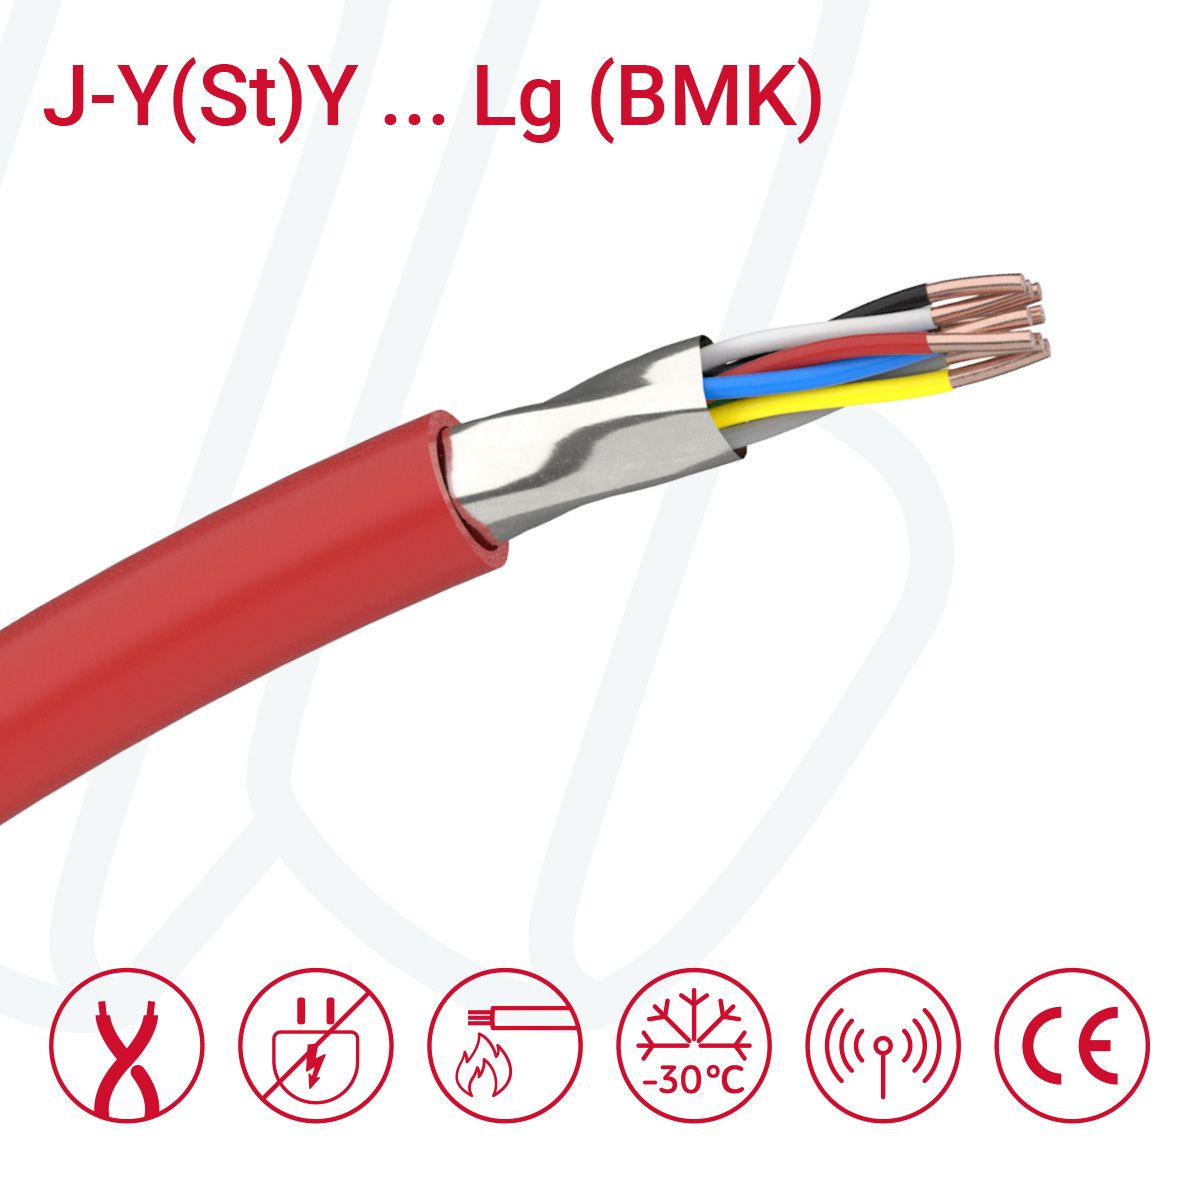 Кабель J-Y(St)Y ... Lg 06X2X0.8 (0.52мм²) BMK червоний, 12, 0.52